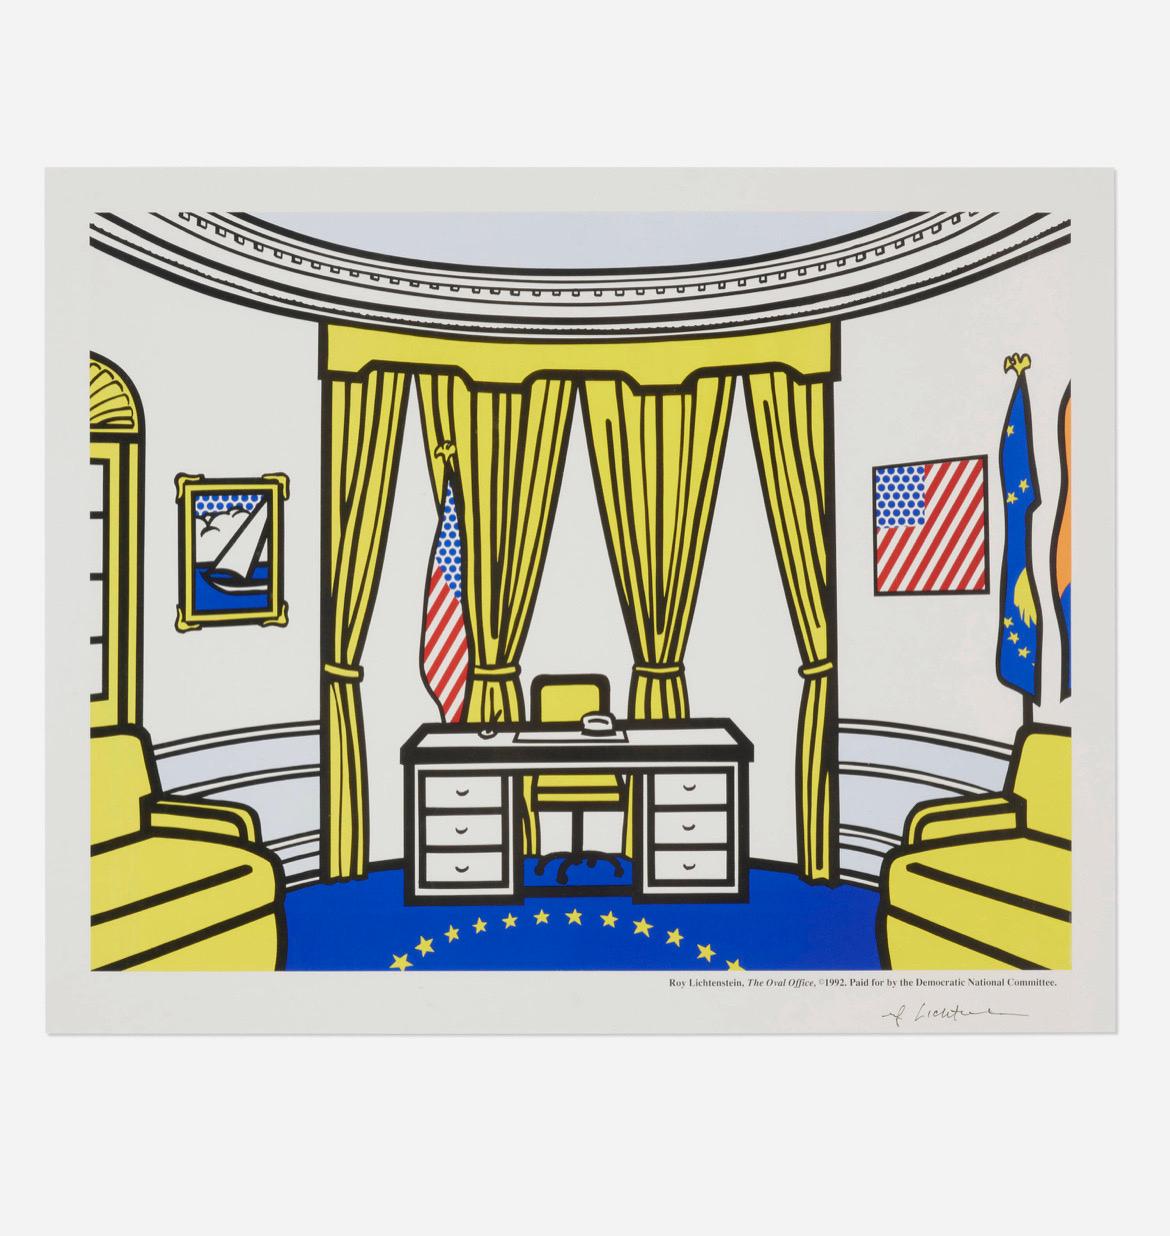 Roy Lichtenstein Eine neue Generation von Führungskräften (The Oval Office), 1992
Offsetlithographie in Farben.
Bild: 25 h × 32½ w in (63 × 83 cm)
Sicht: 28½ h × 35⅜ w in (72 × 90 cm)

Signiert unten rechts 